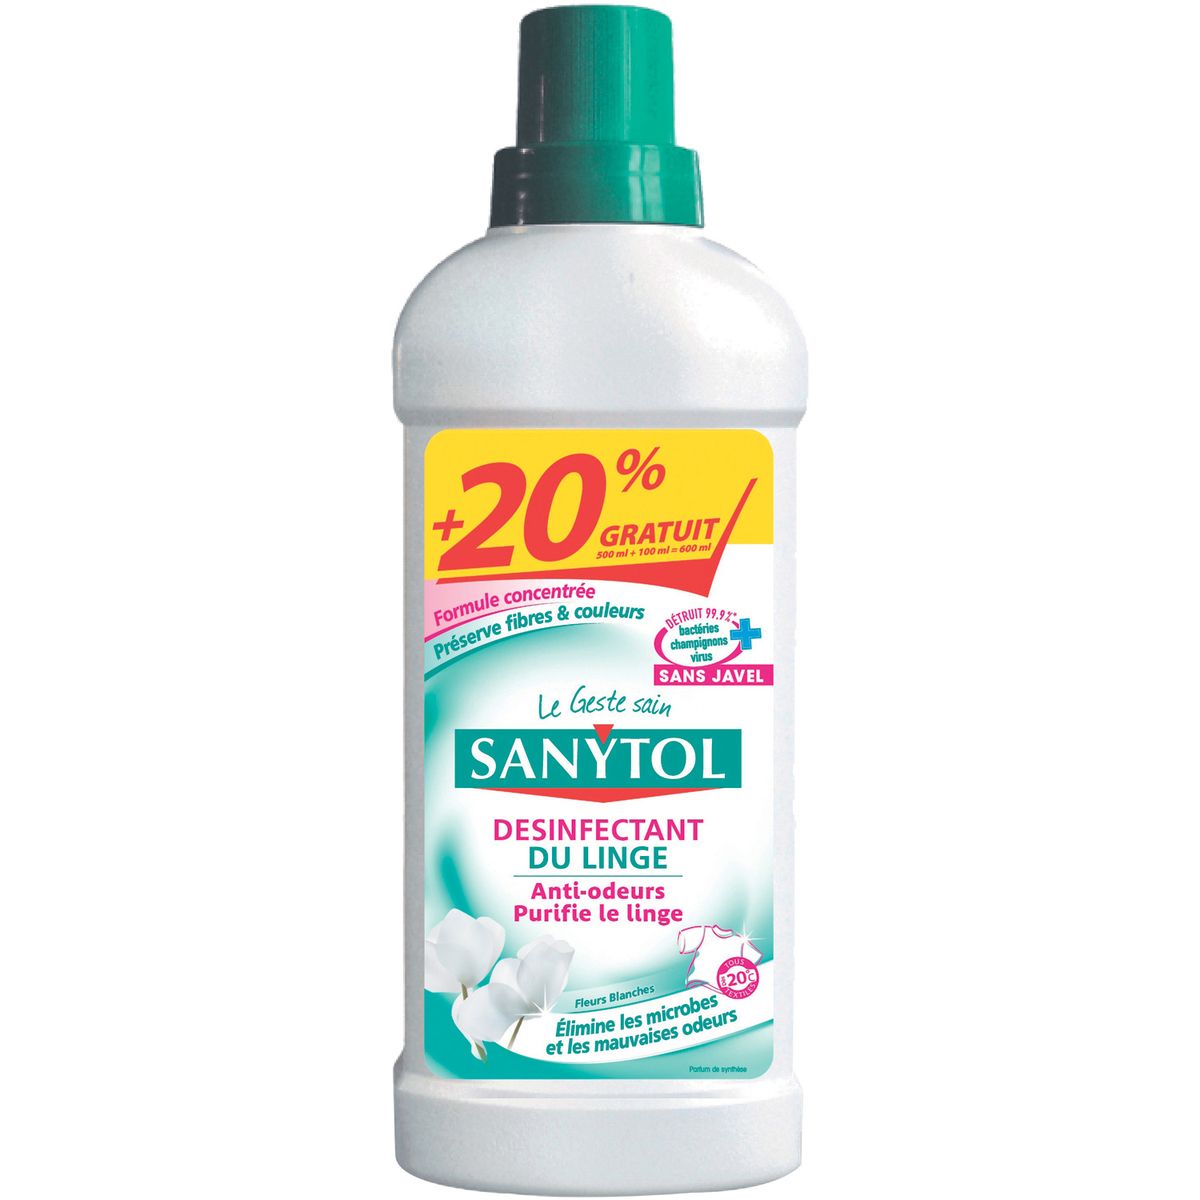 SANYTOL Sanytol désinfectant du linge 500ml +20%offerts pas cher